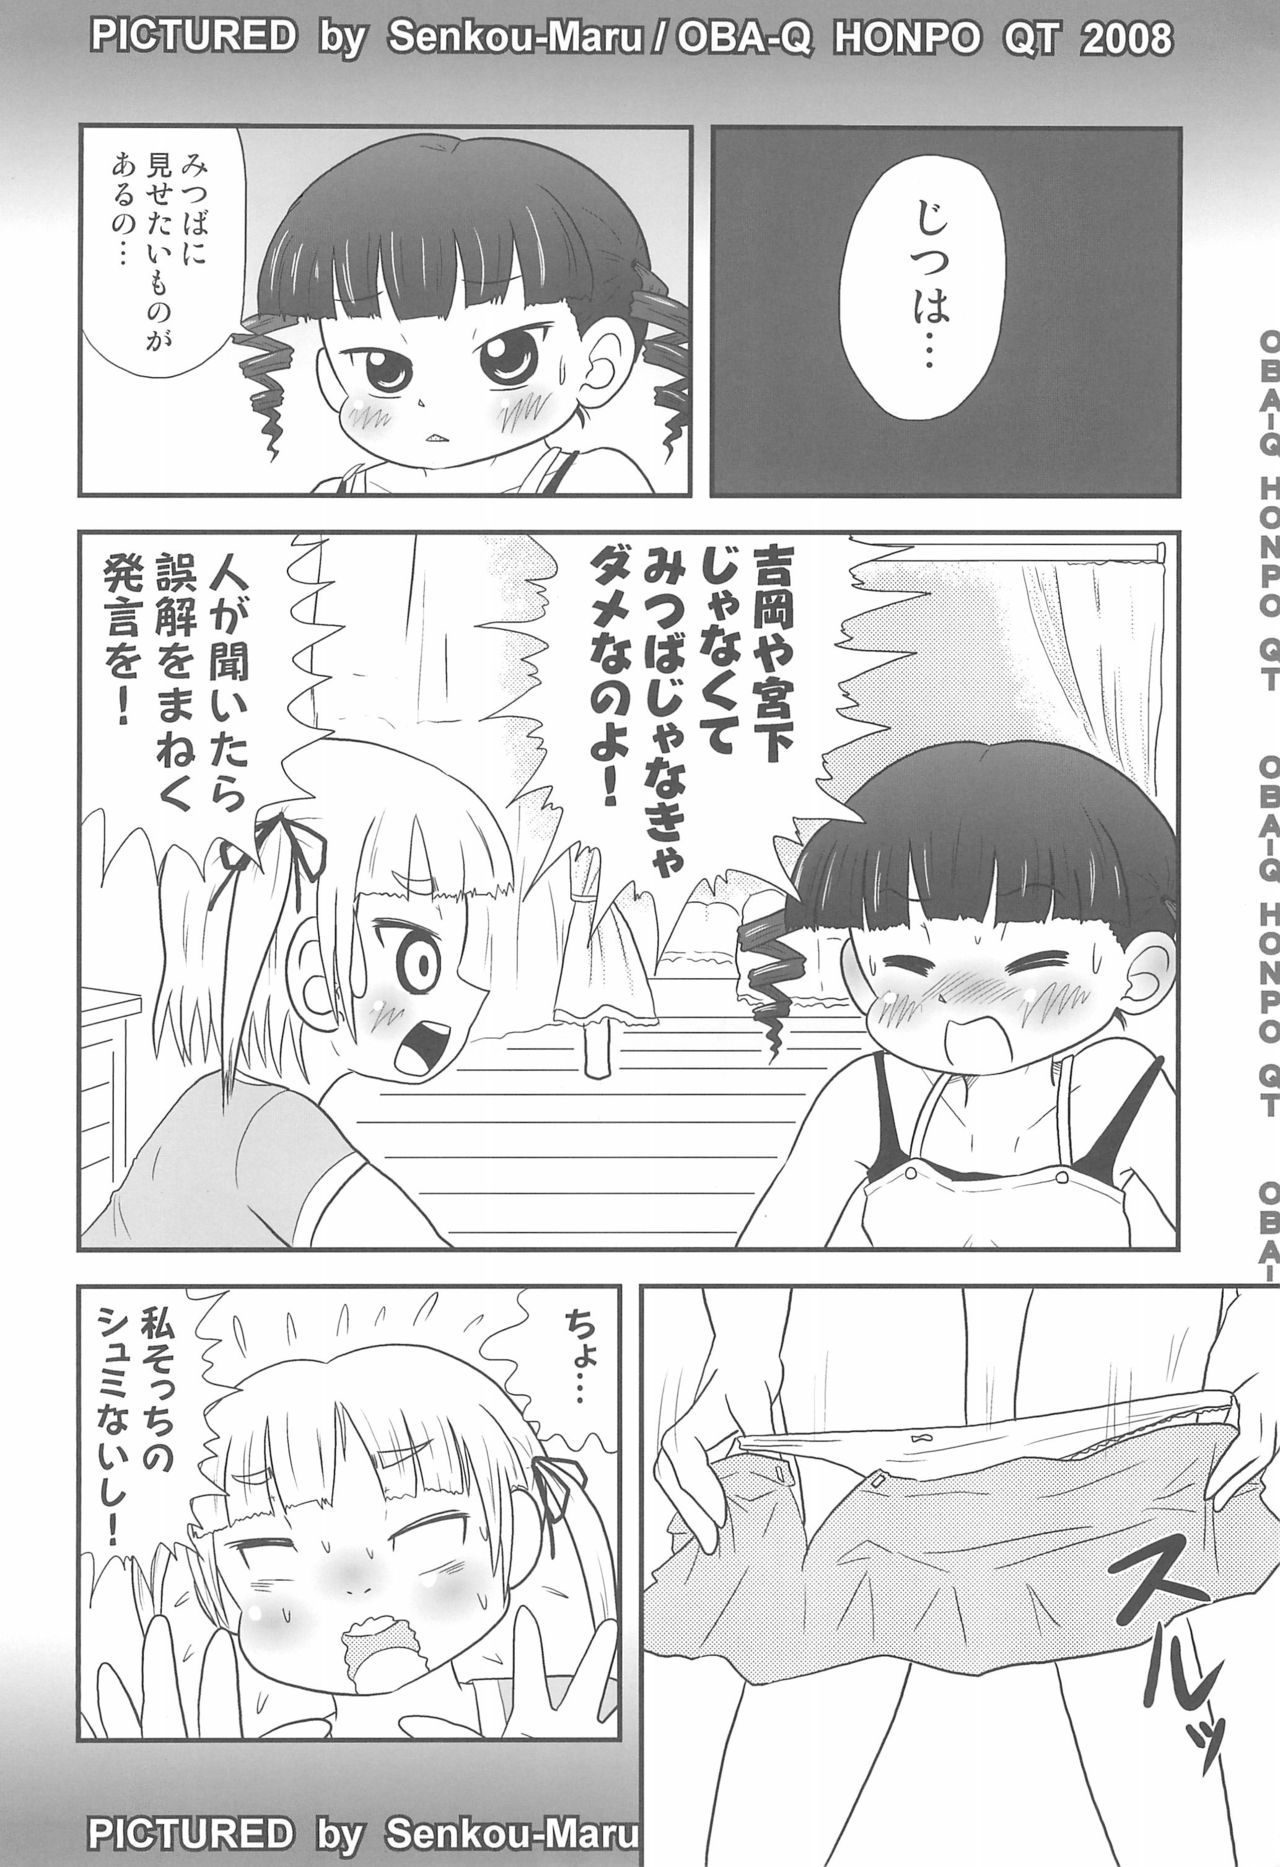 (Puniket 18) [OBA-Q HONPO QT (Senkou-Maru)] Mitsudomoerohon 3 (Mitsudomoe) page 4 full